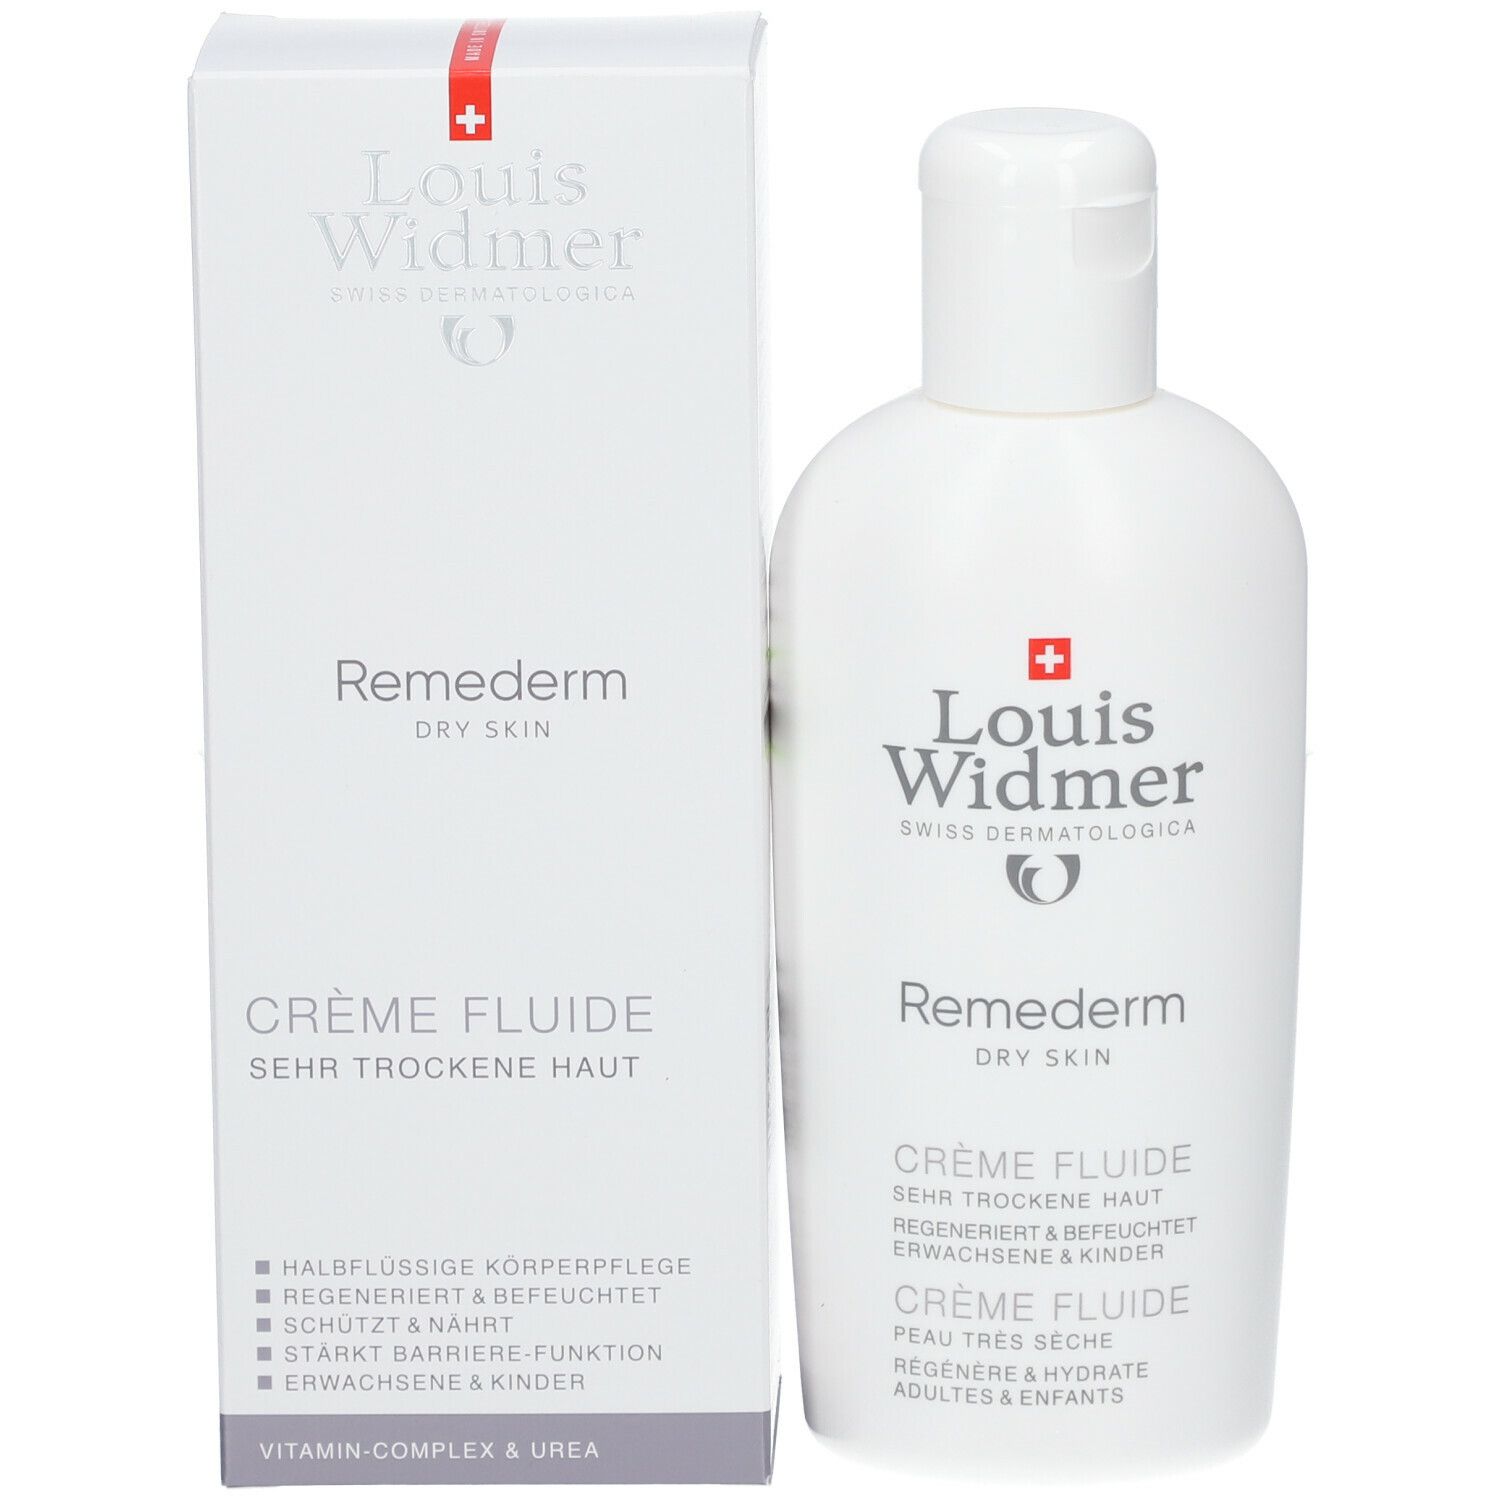 Louis Widmer Remederm Crème Fluide parfumée